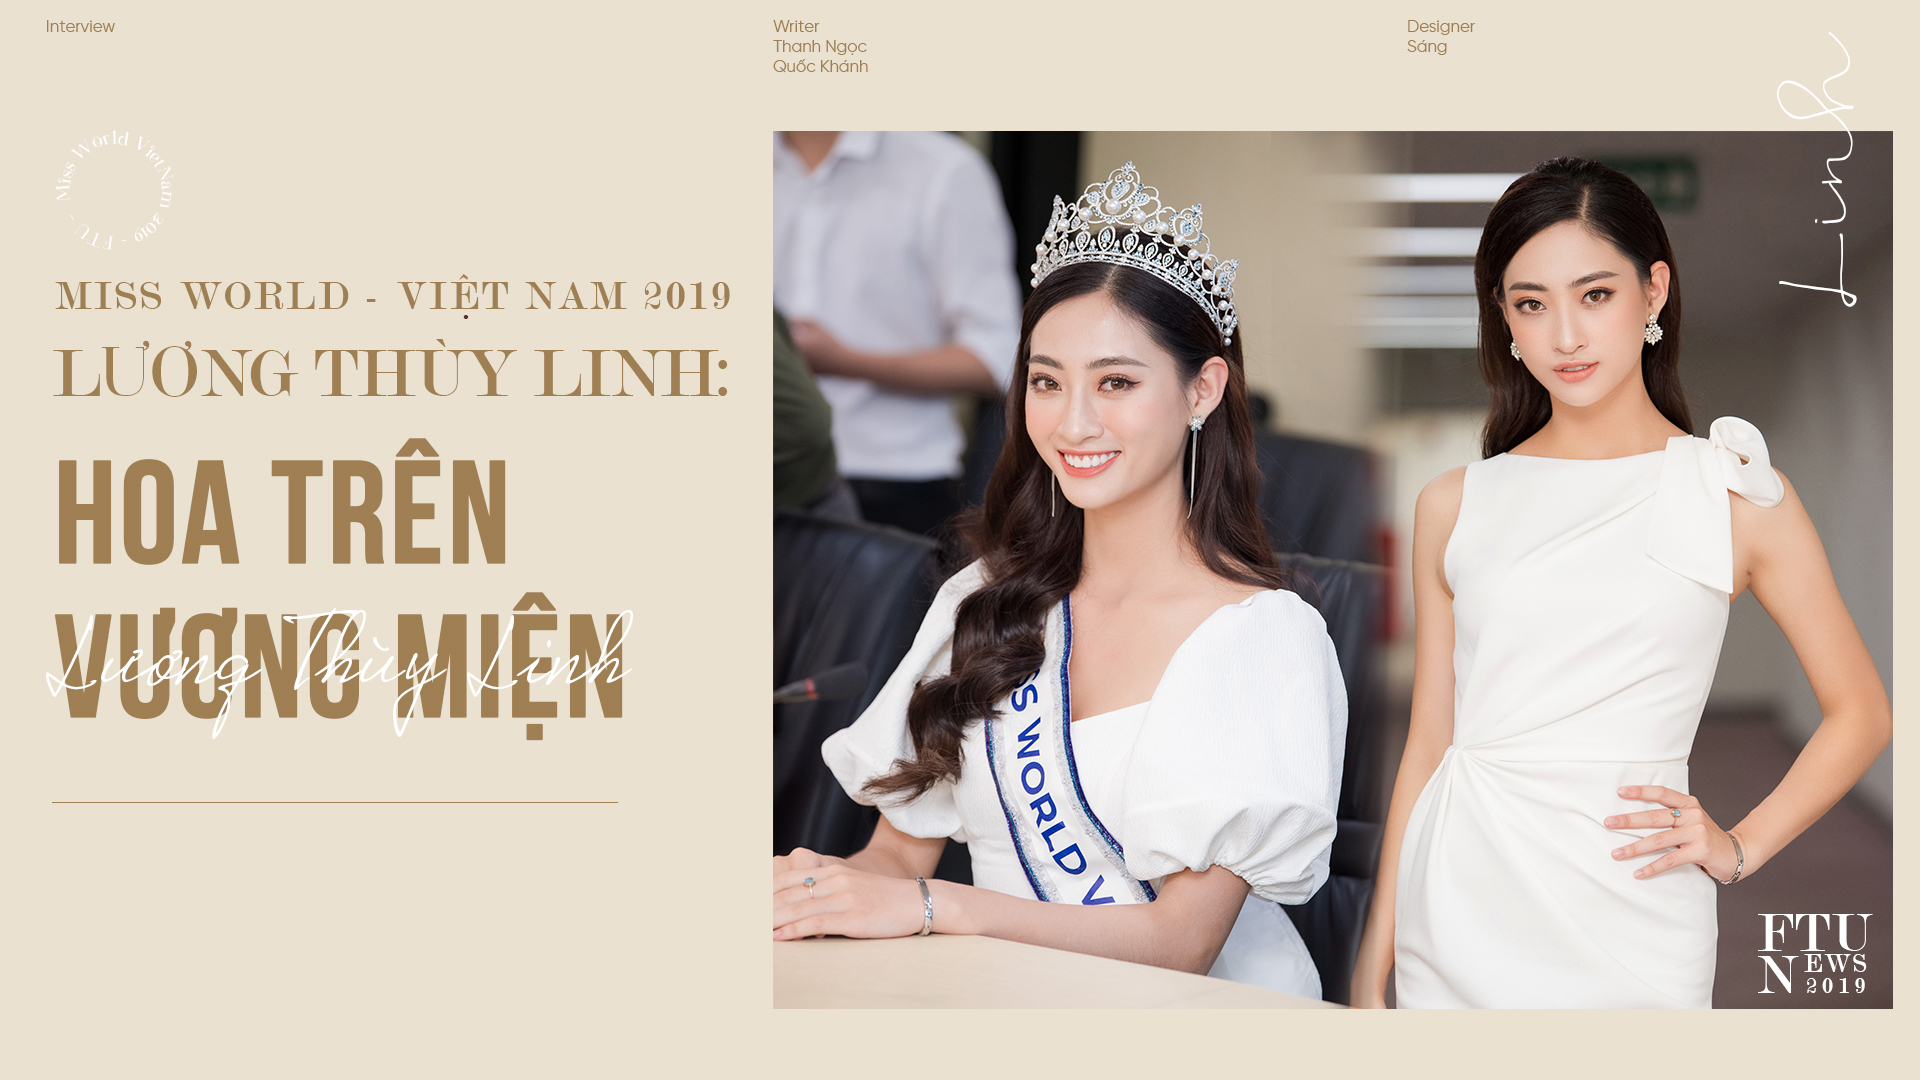 Miss World – Việt Nam 2019 Lương Thùy Linh: Hoa trên vương miện